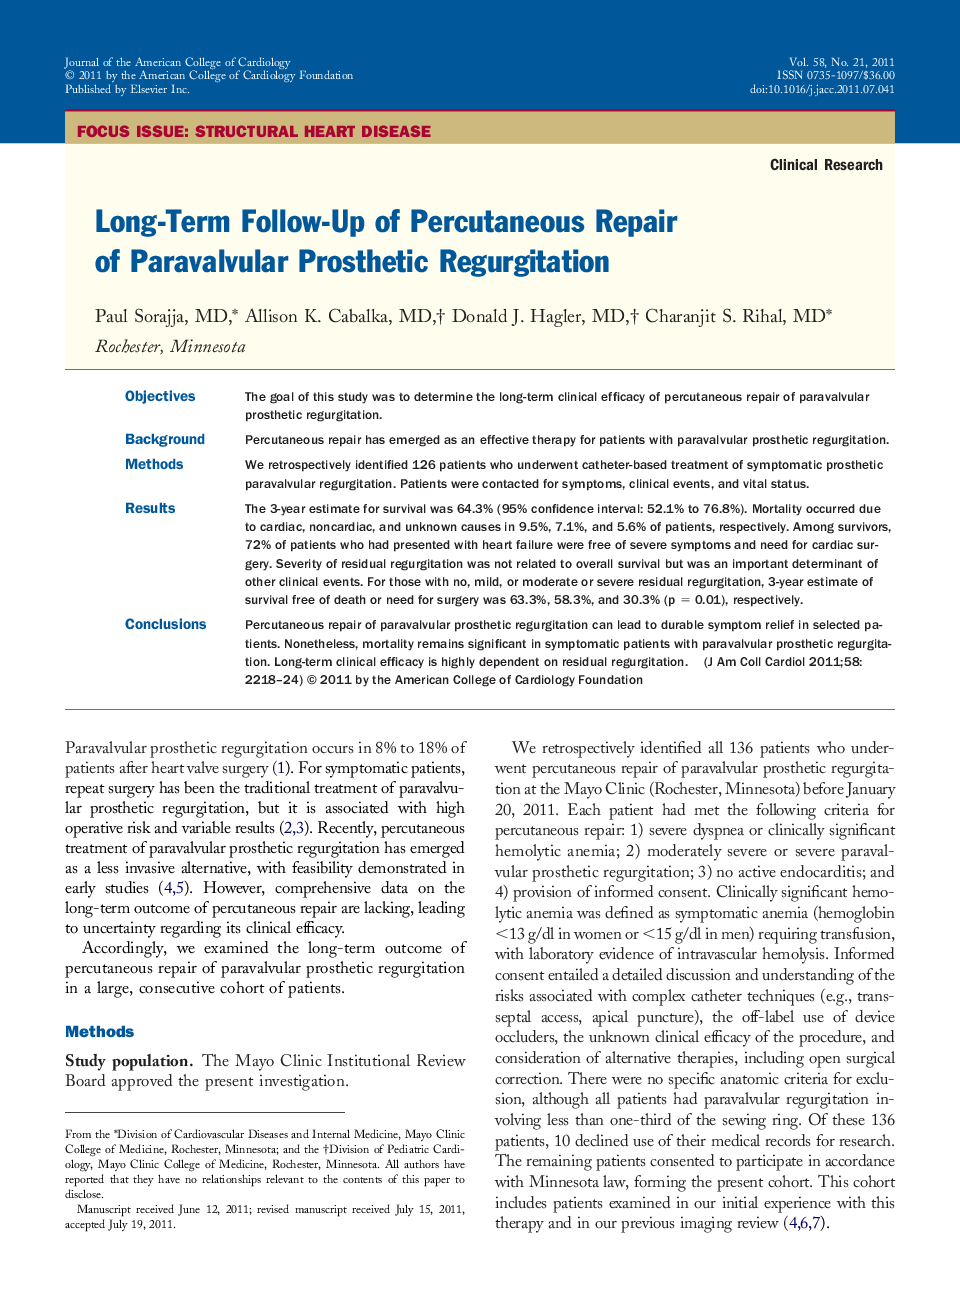 Long-Term Follow-Up of Percutaneous Repair of Paravalvular Prosthetic Regurgitation 